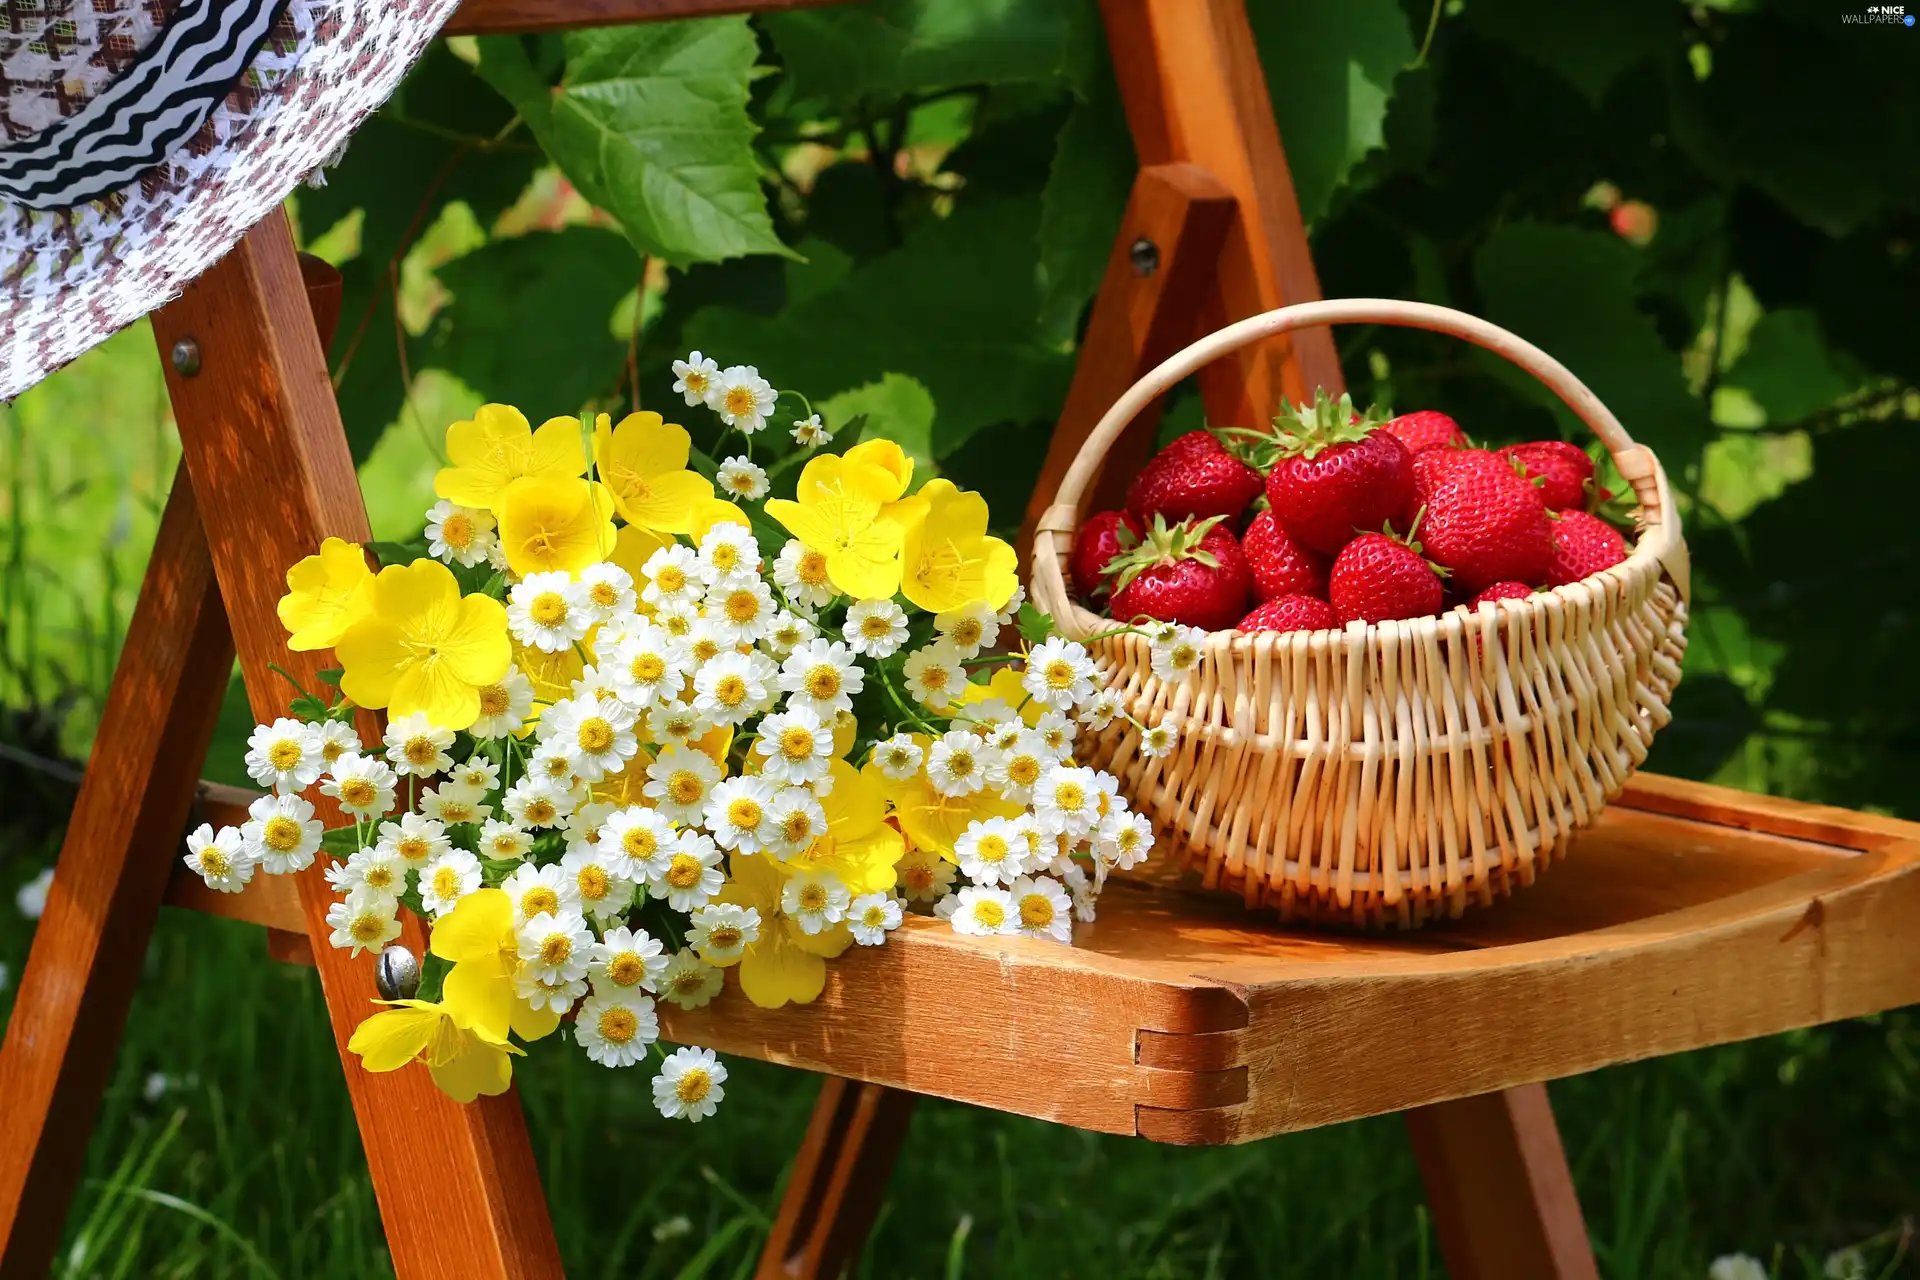 Chair, basket, strawberries, Flowers